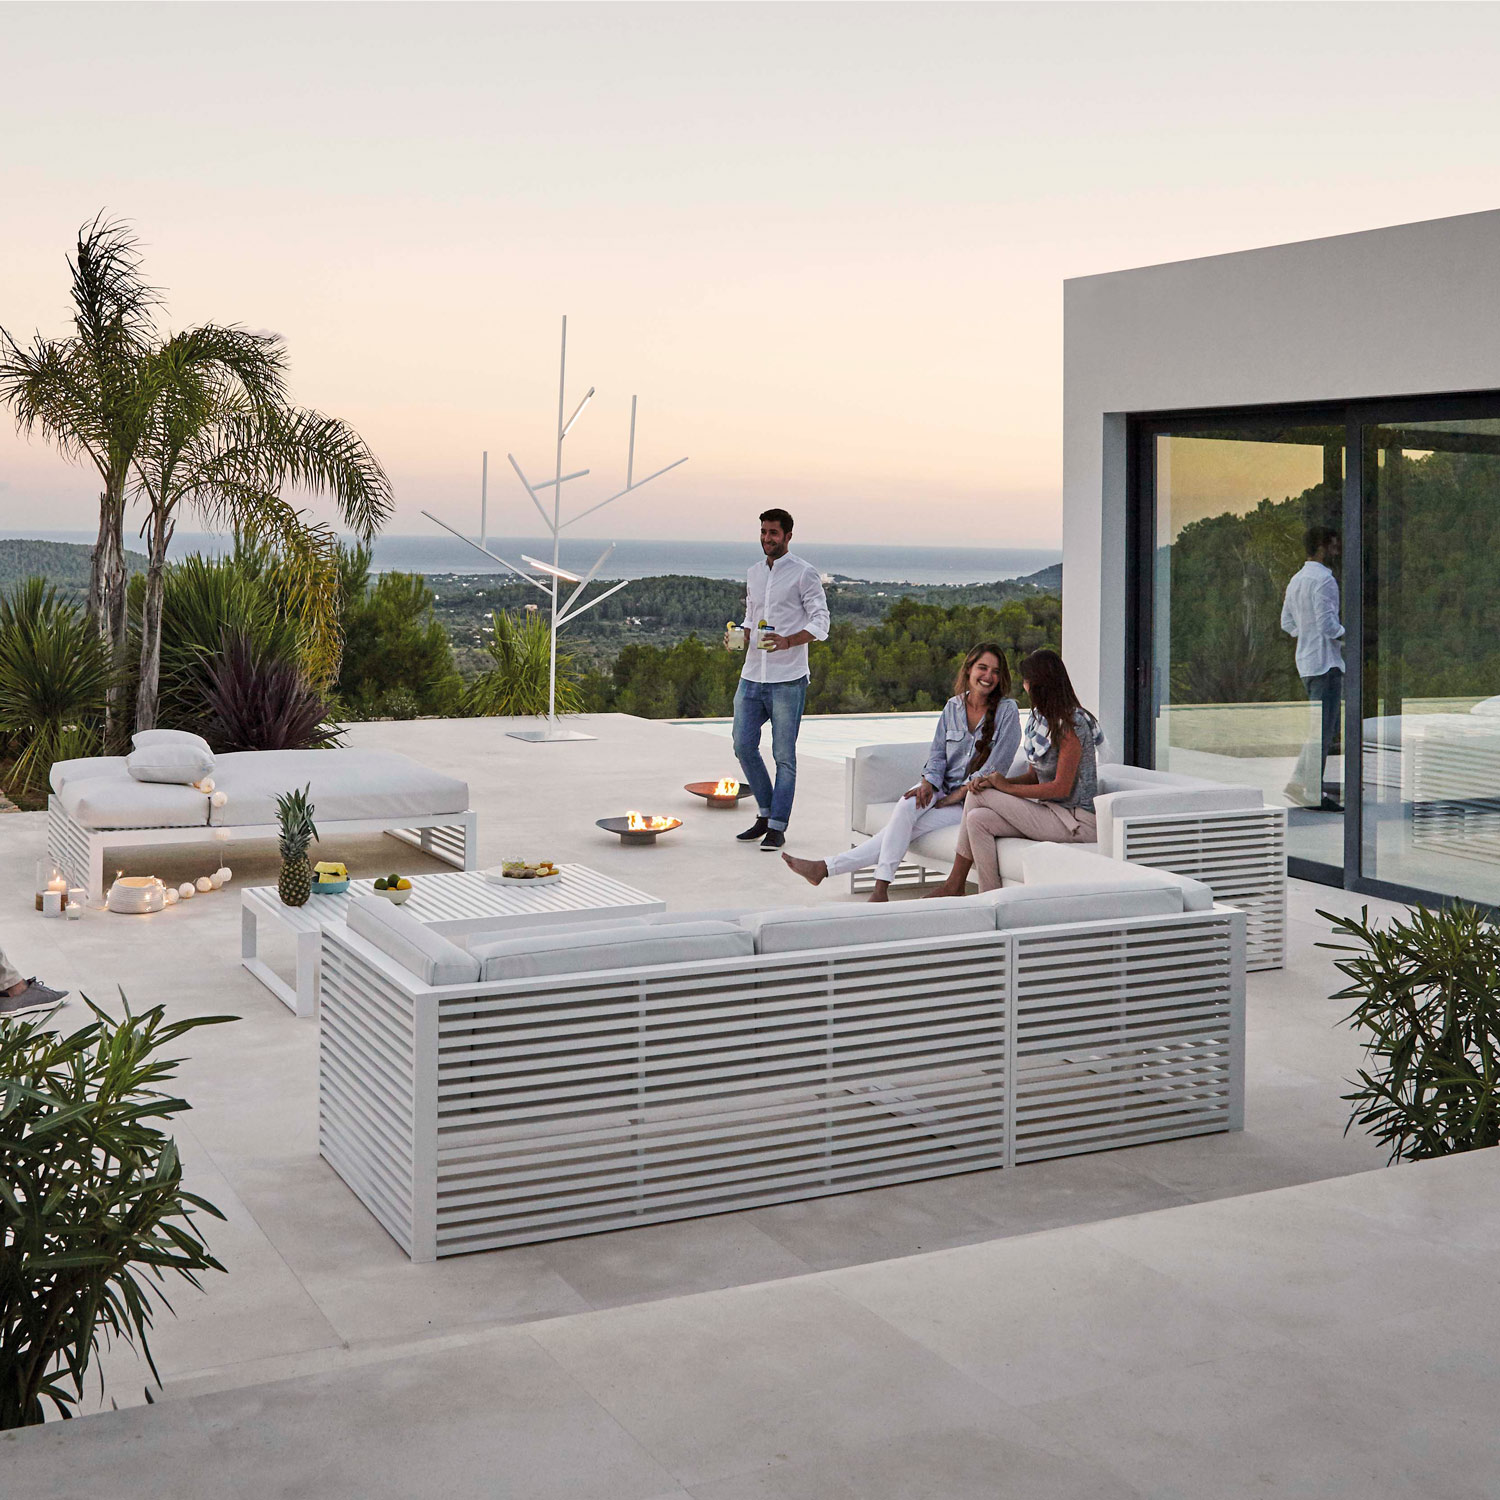 DNA luksuriøse møbler er perfekte til at nyde solnedgangen på terrassen fra Gitz Design og Gandia Blasco